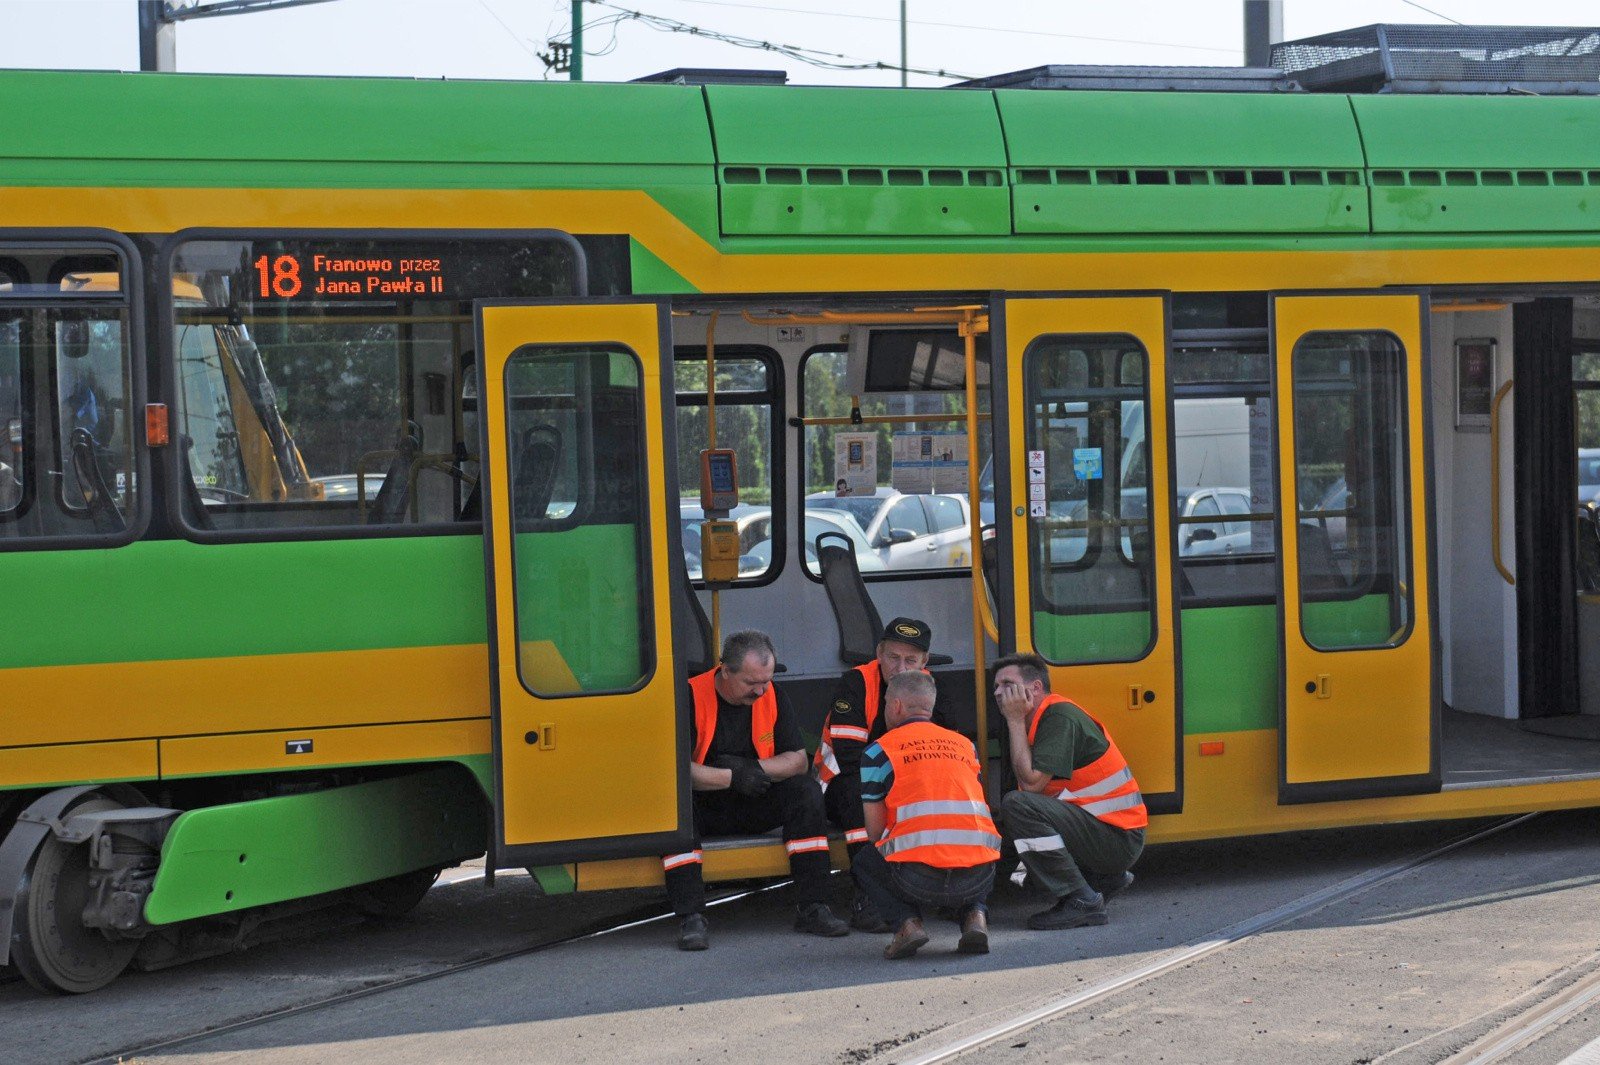 Wykolejenie dwóch tramwajów w Poznaniu. Ruch w obie strony został  wstrzymany. Na miejscu działają służby | Głos Wielkopolski